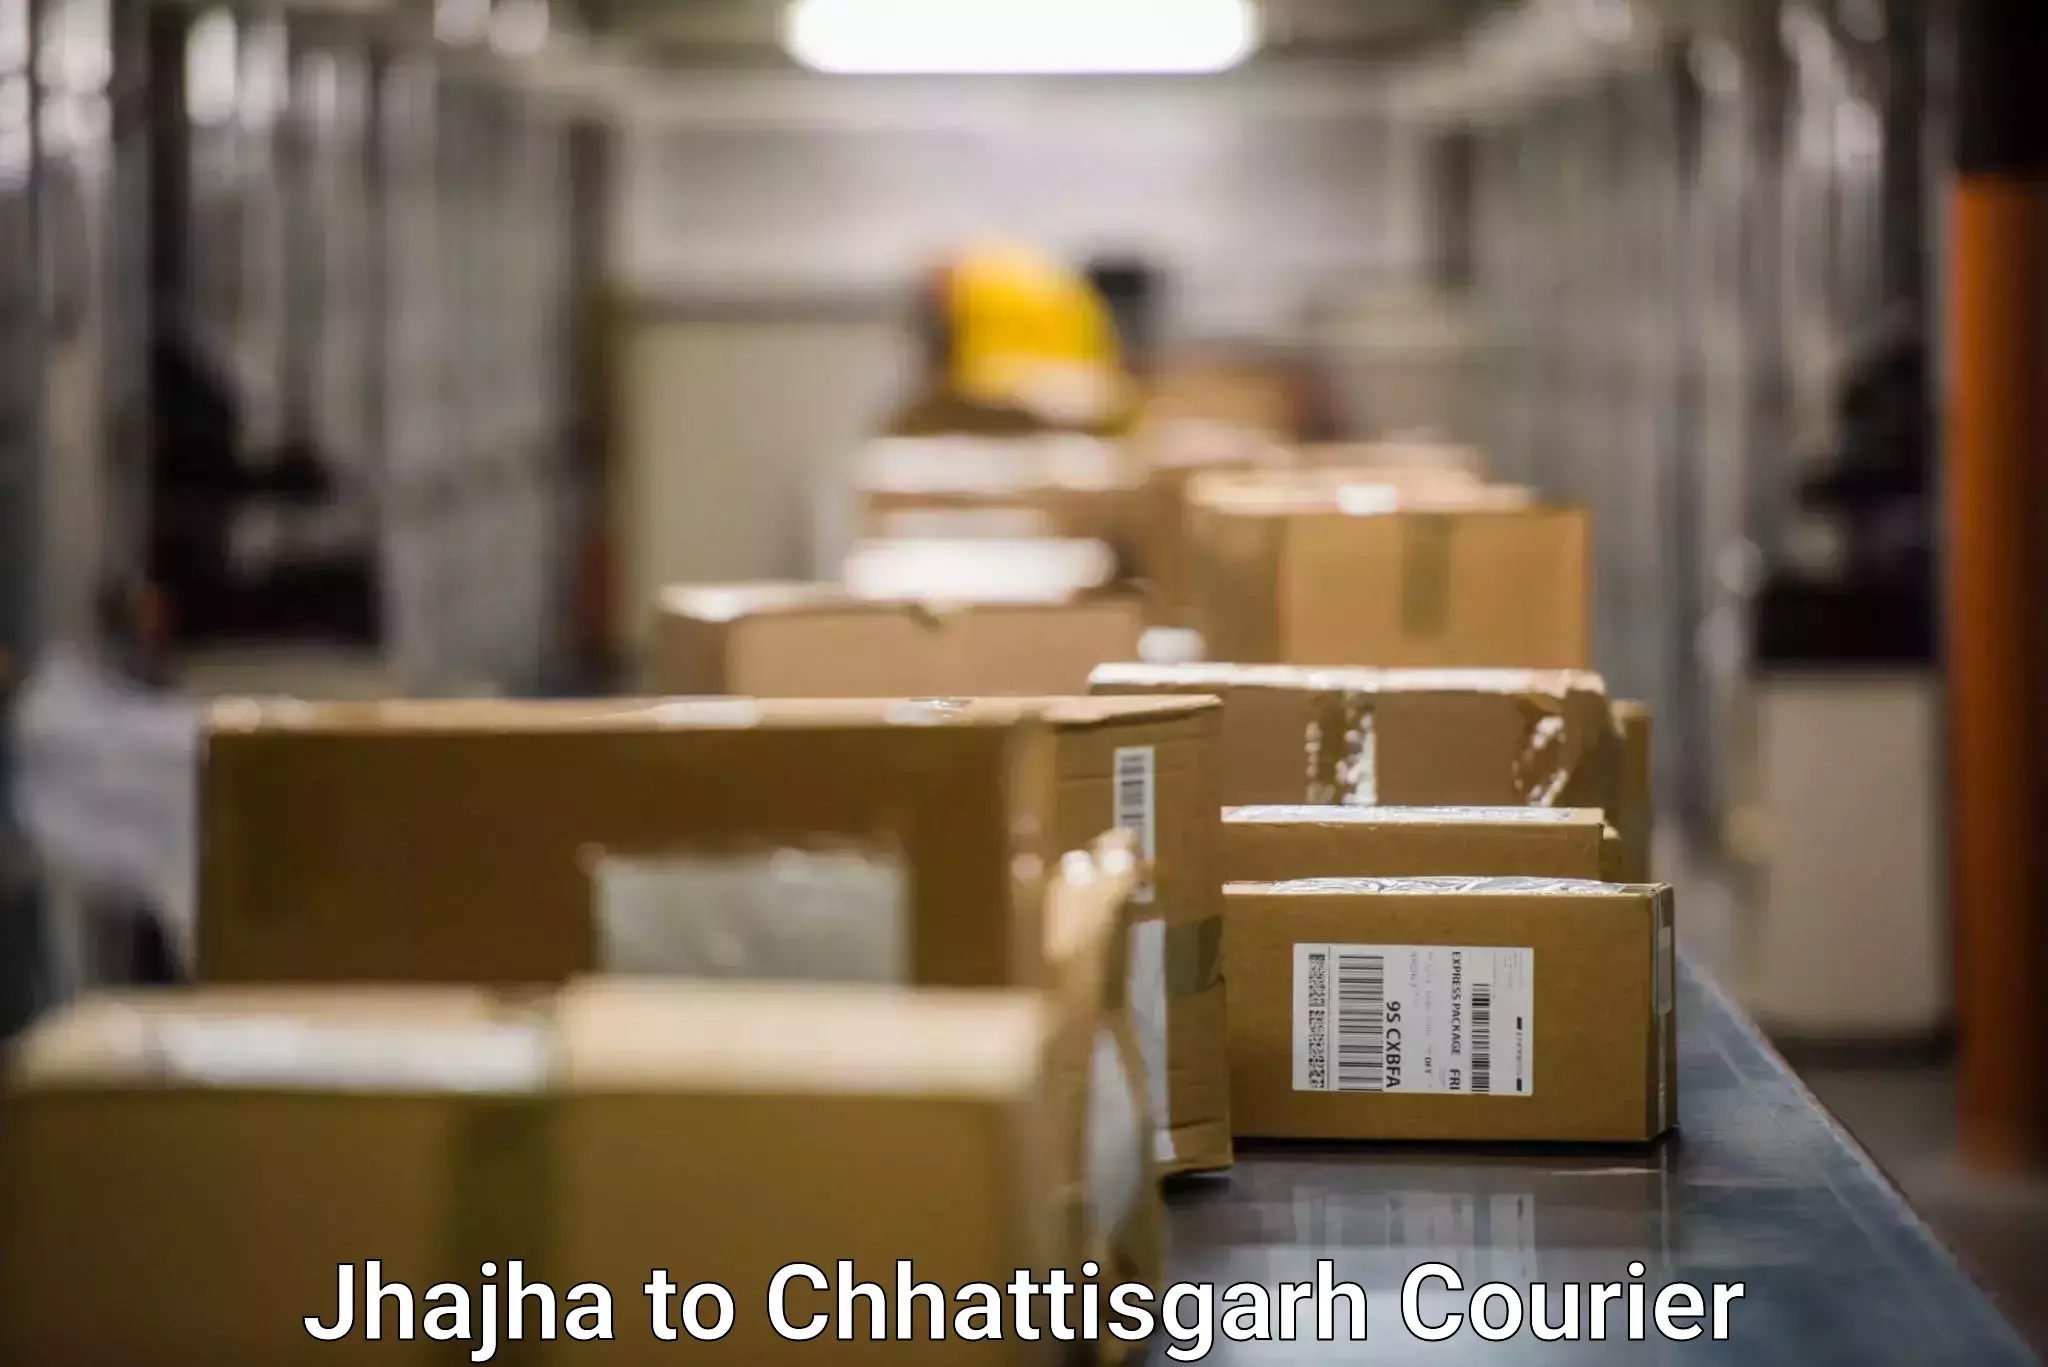 Efficient shipping operations Jhajha to Mahasamund